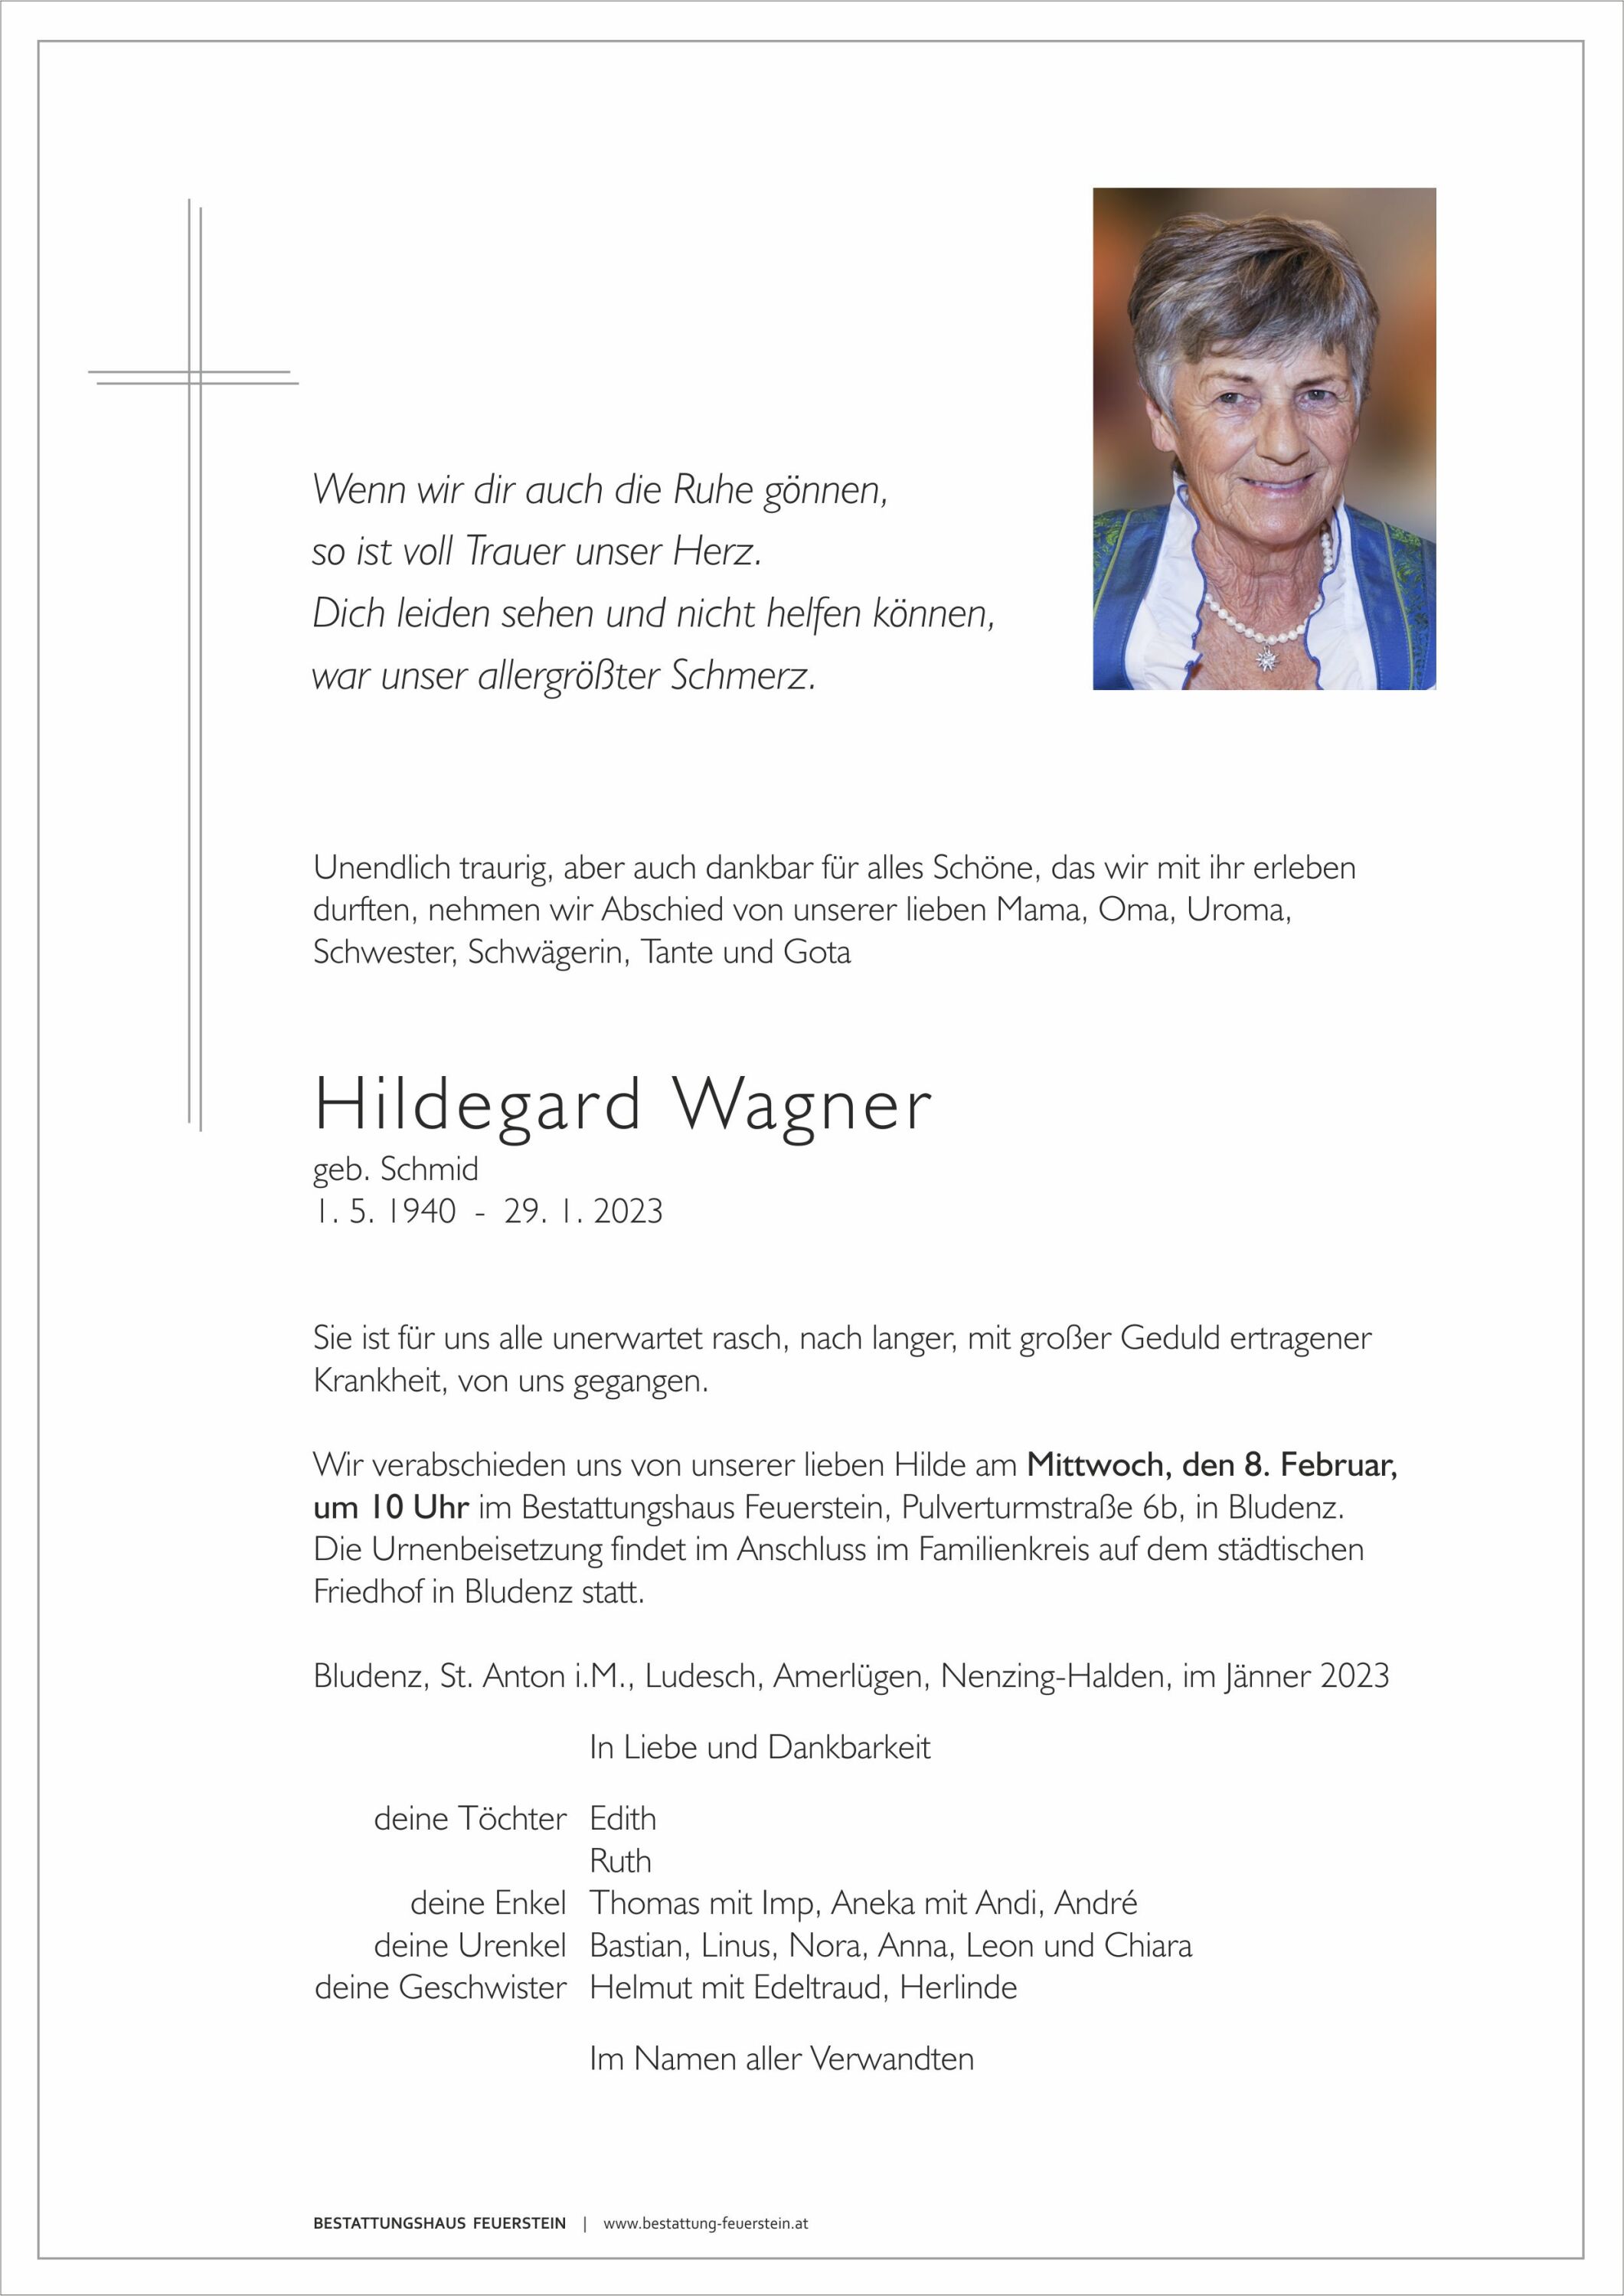 Hildegard Wagner